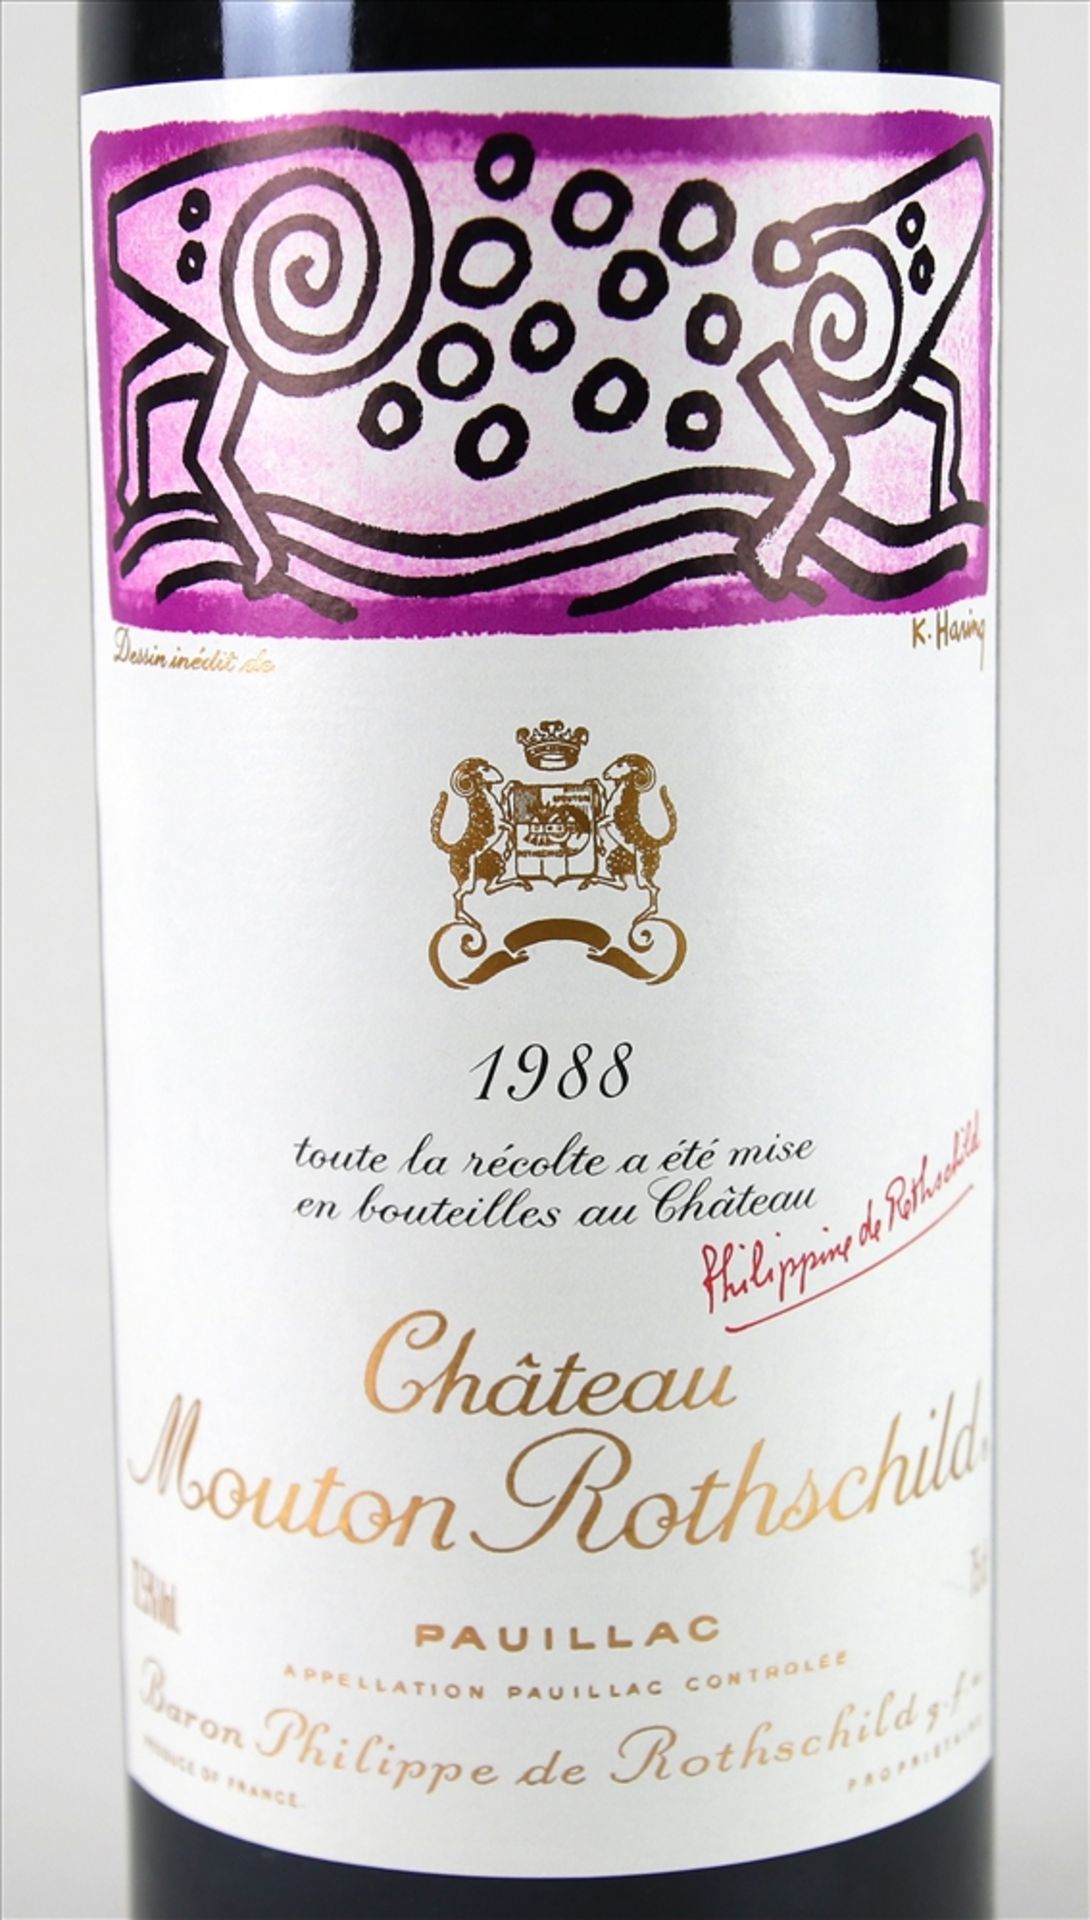 Flasche Chateau Mouton Rothschild 1988 Pauillac, 0,75 Liter mit dem originalen Etikett von Keith - Bild 2 aus 2